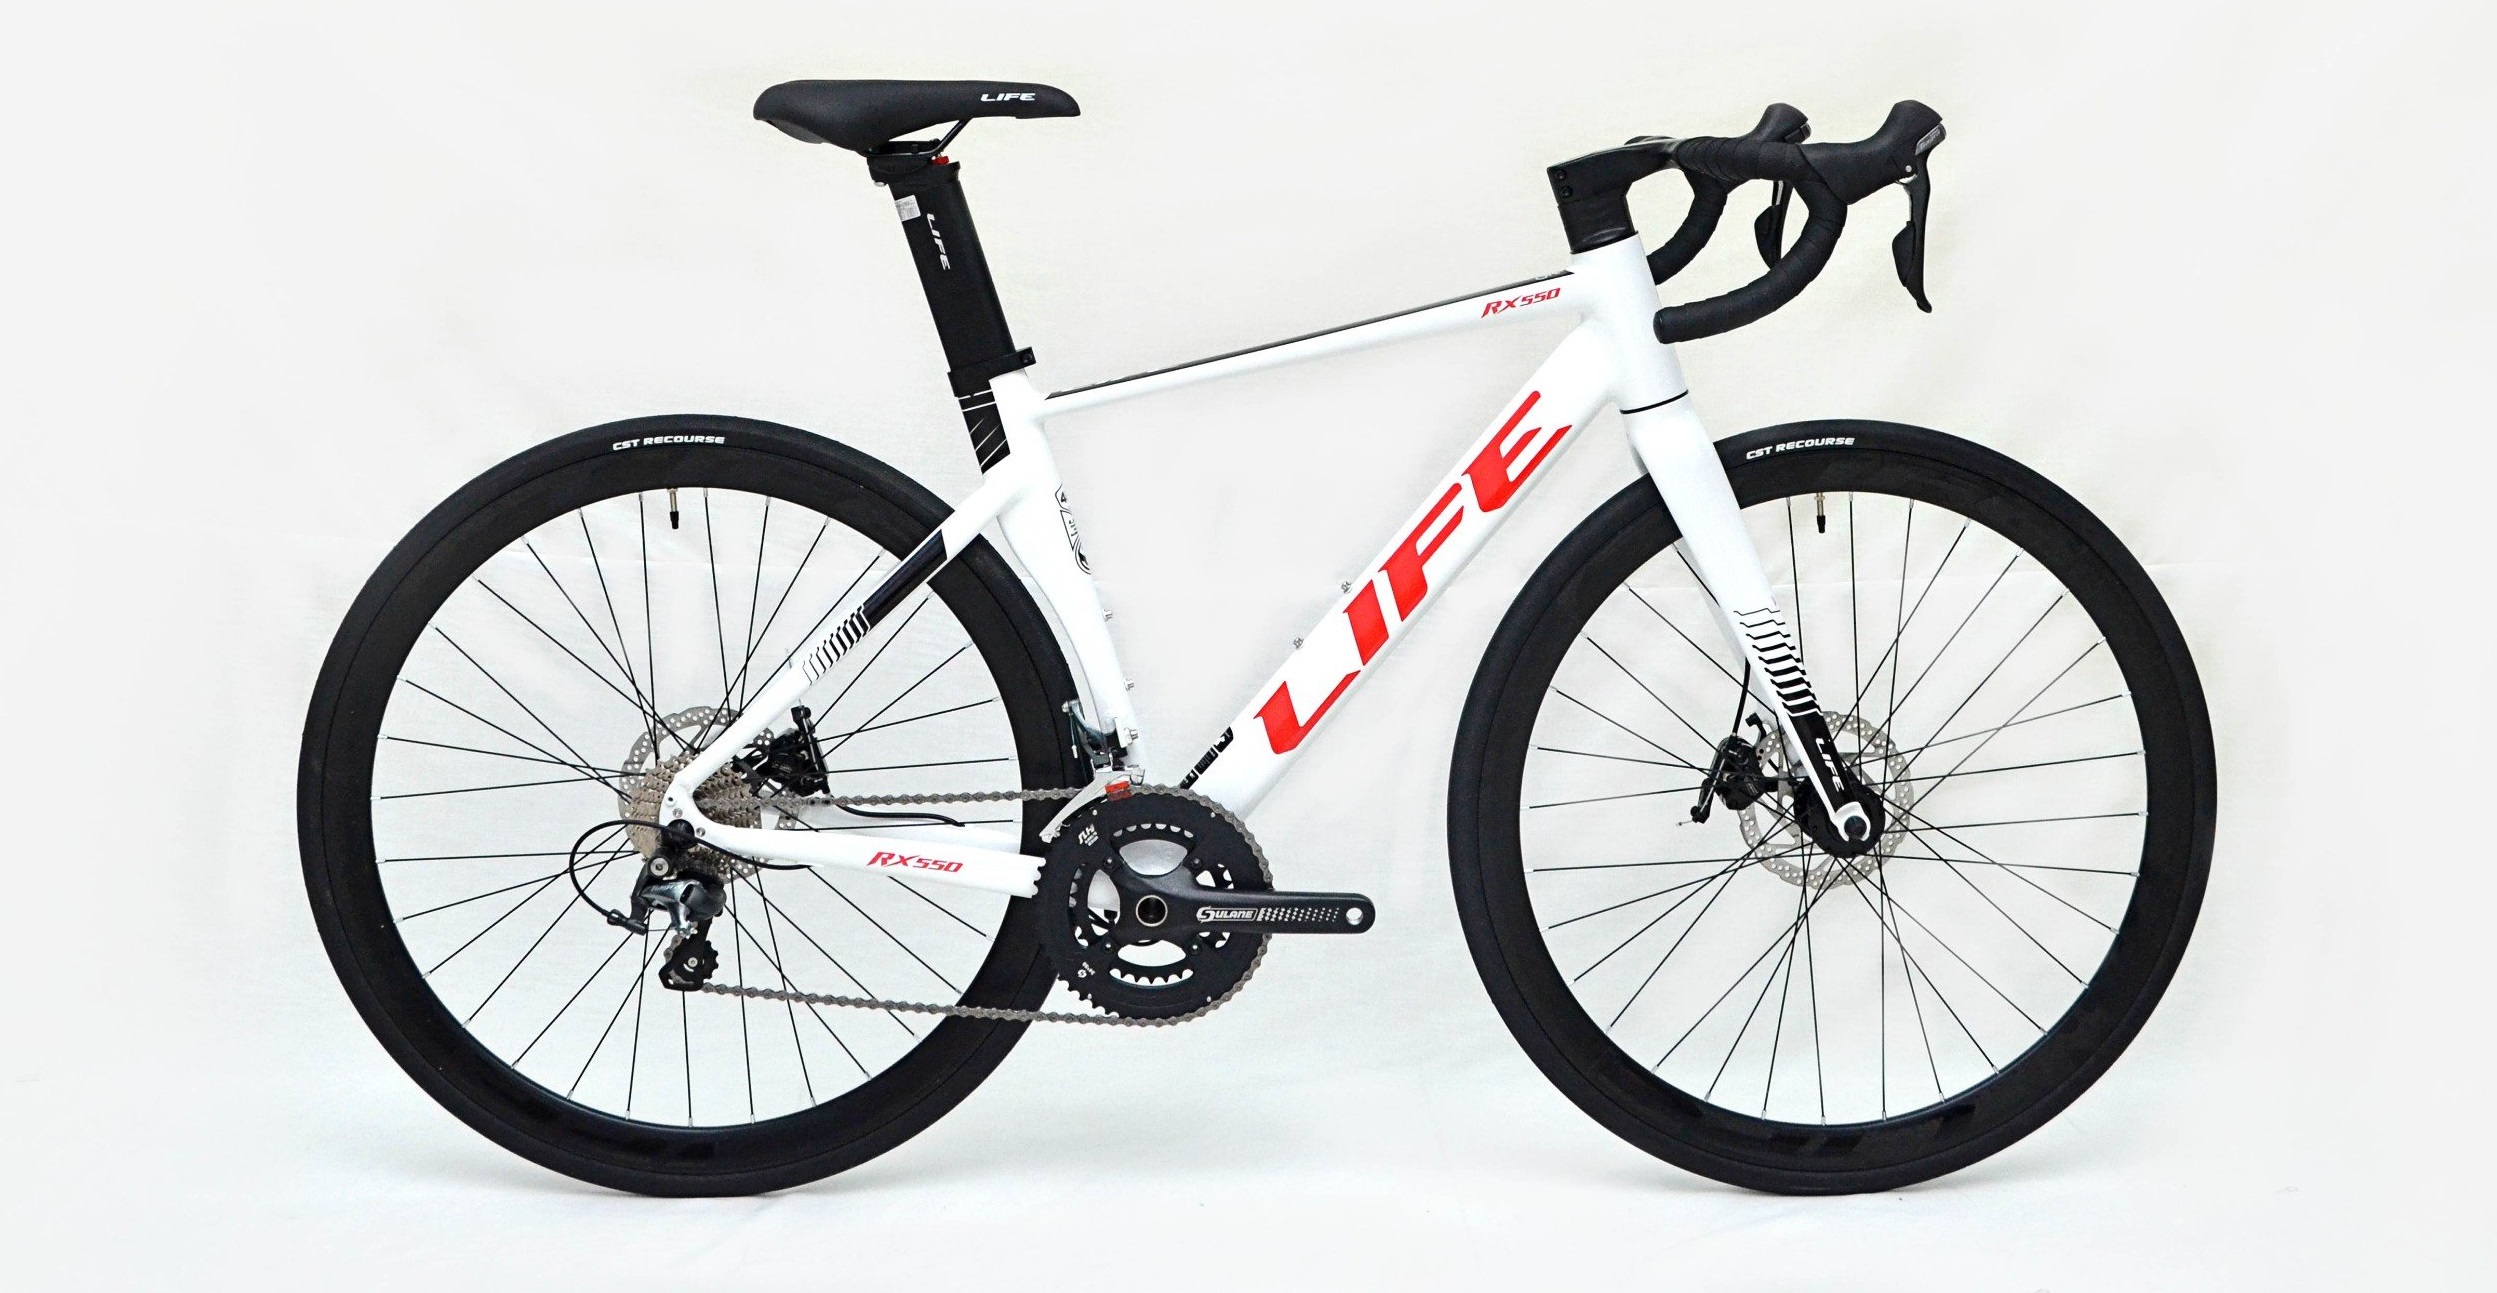 Xe đạp đua Life RX550